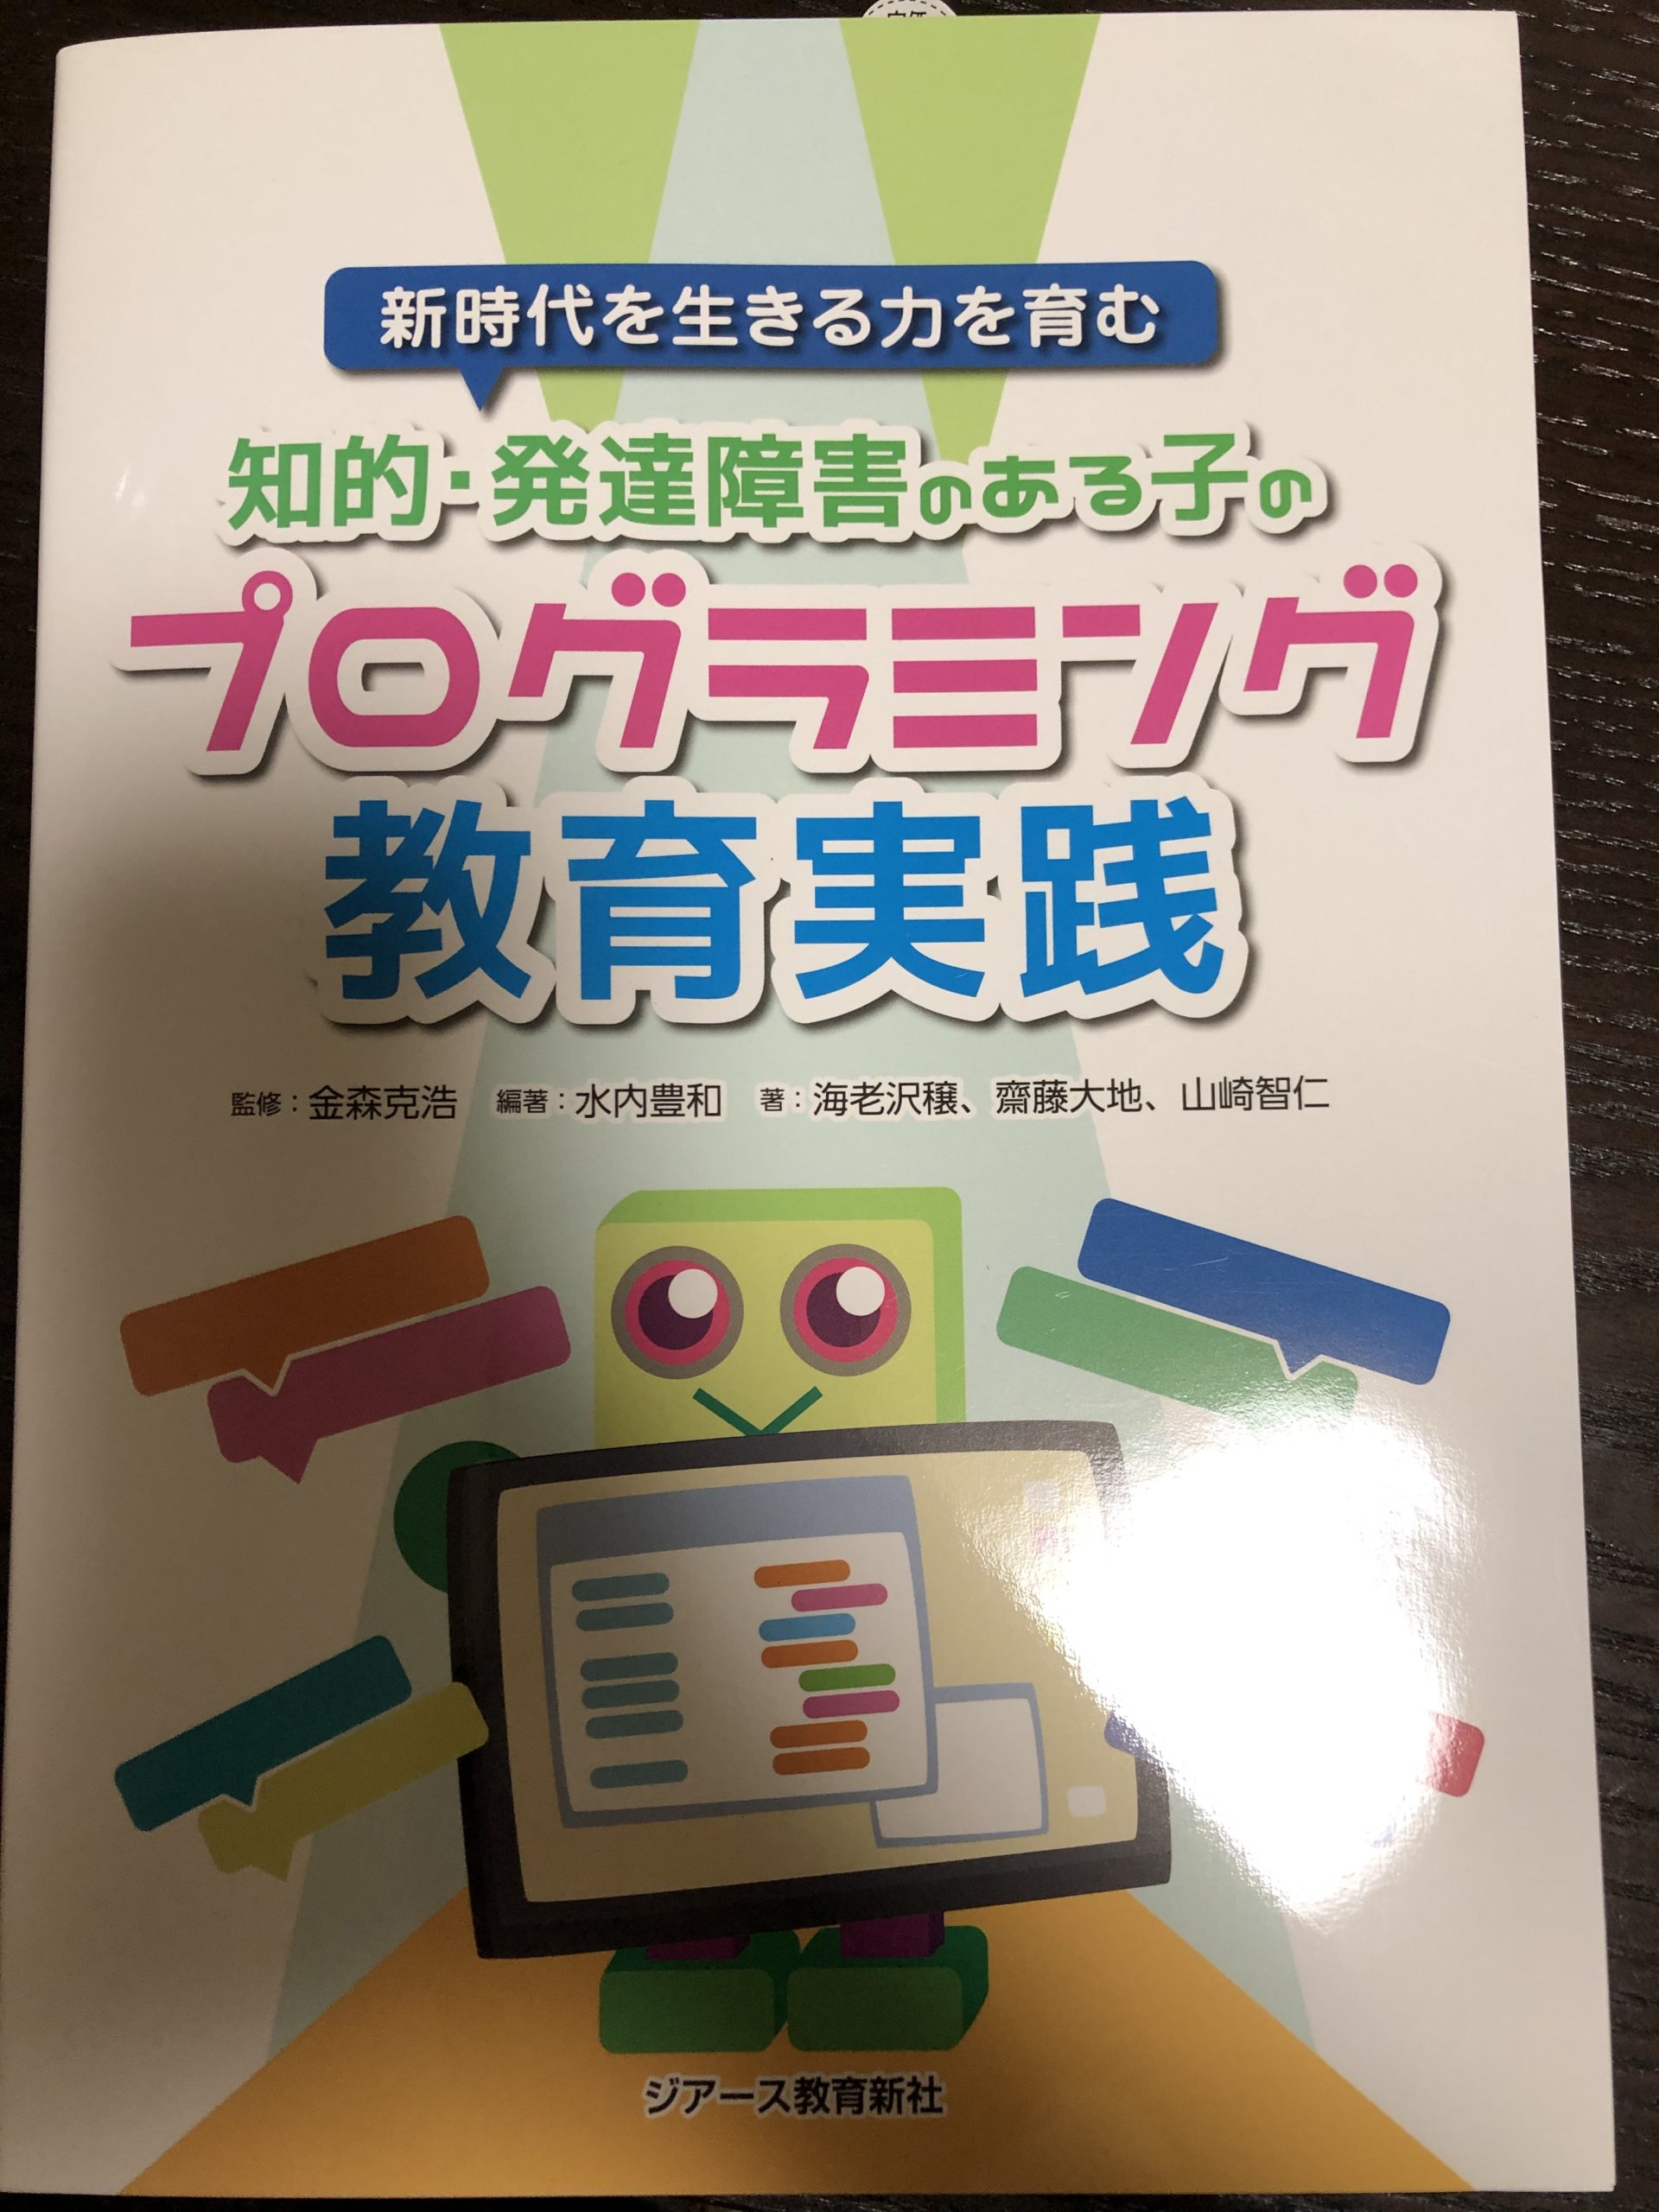 【書籍】新時代を生きる力を育む知的・発達障害のある子のプログラミング教育実践